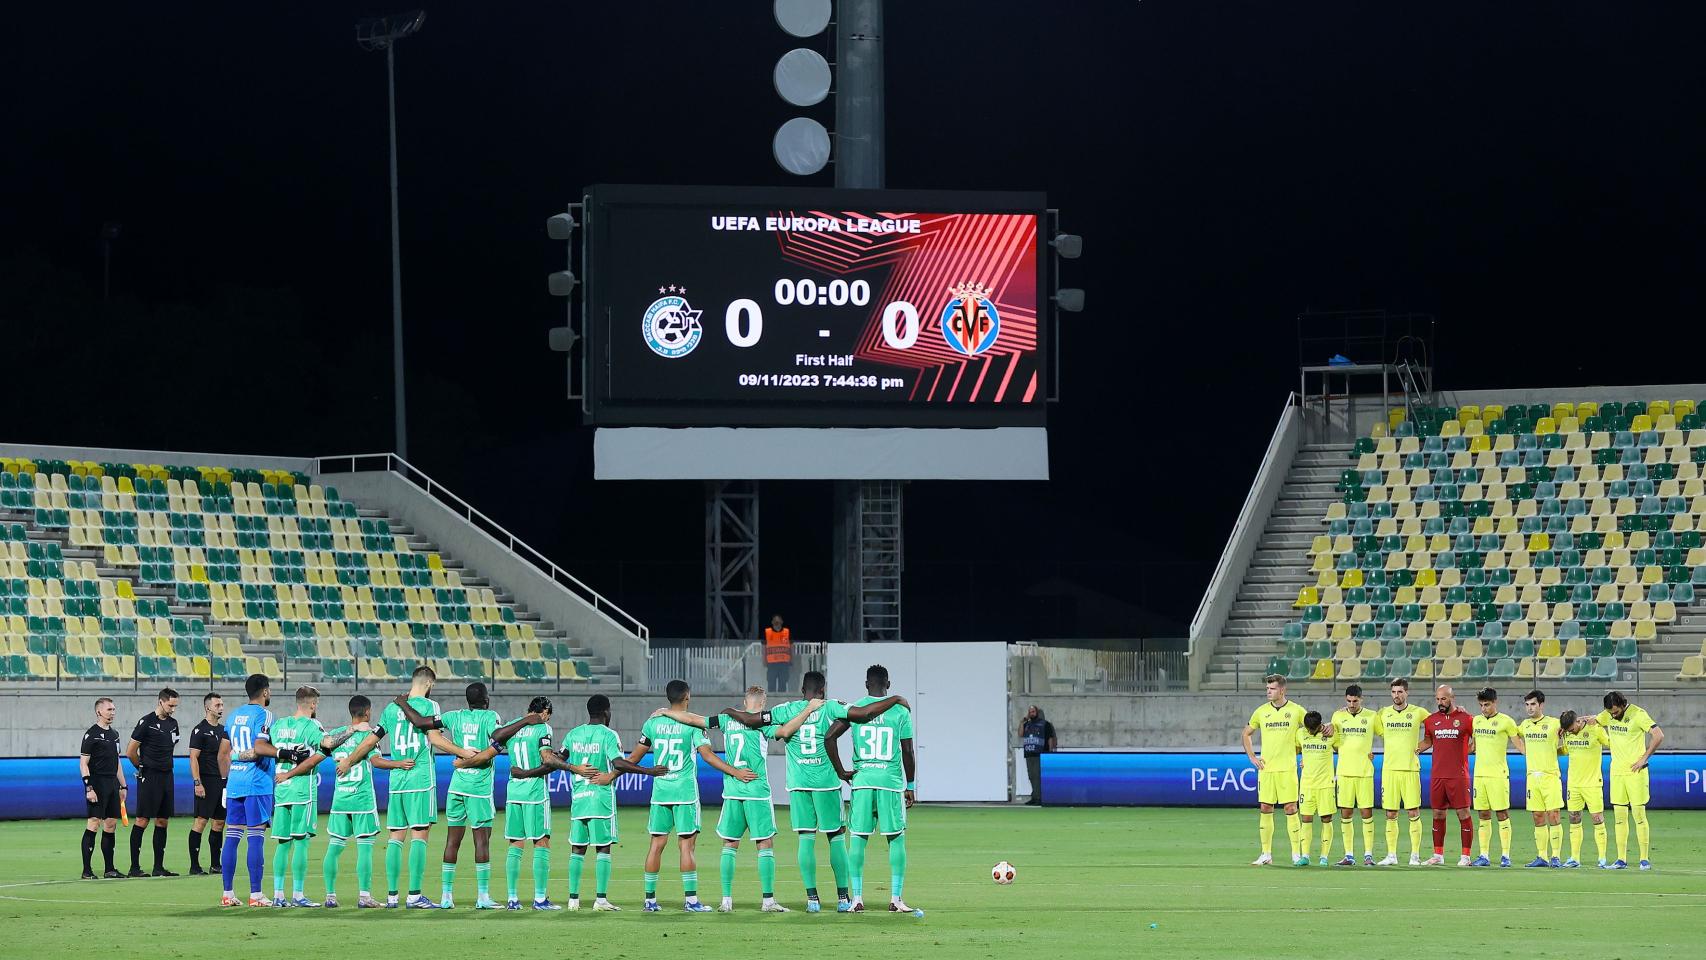 Minuto de silencio en el encuentro entre el Maccabi Haifa y el Villarreal